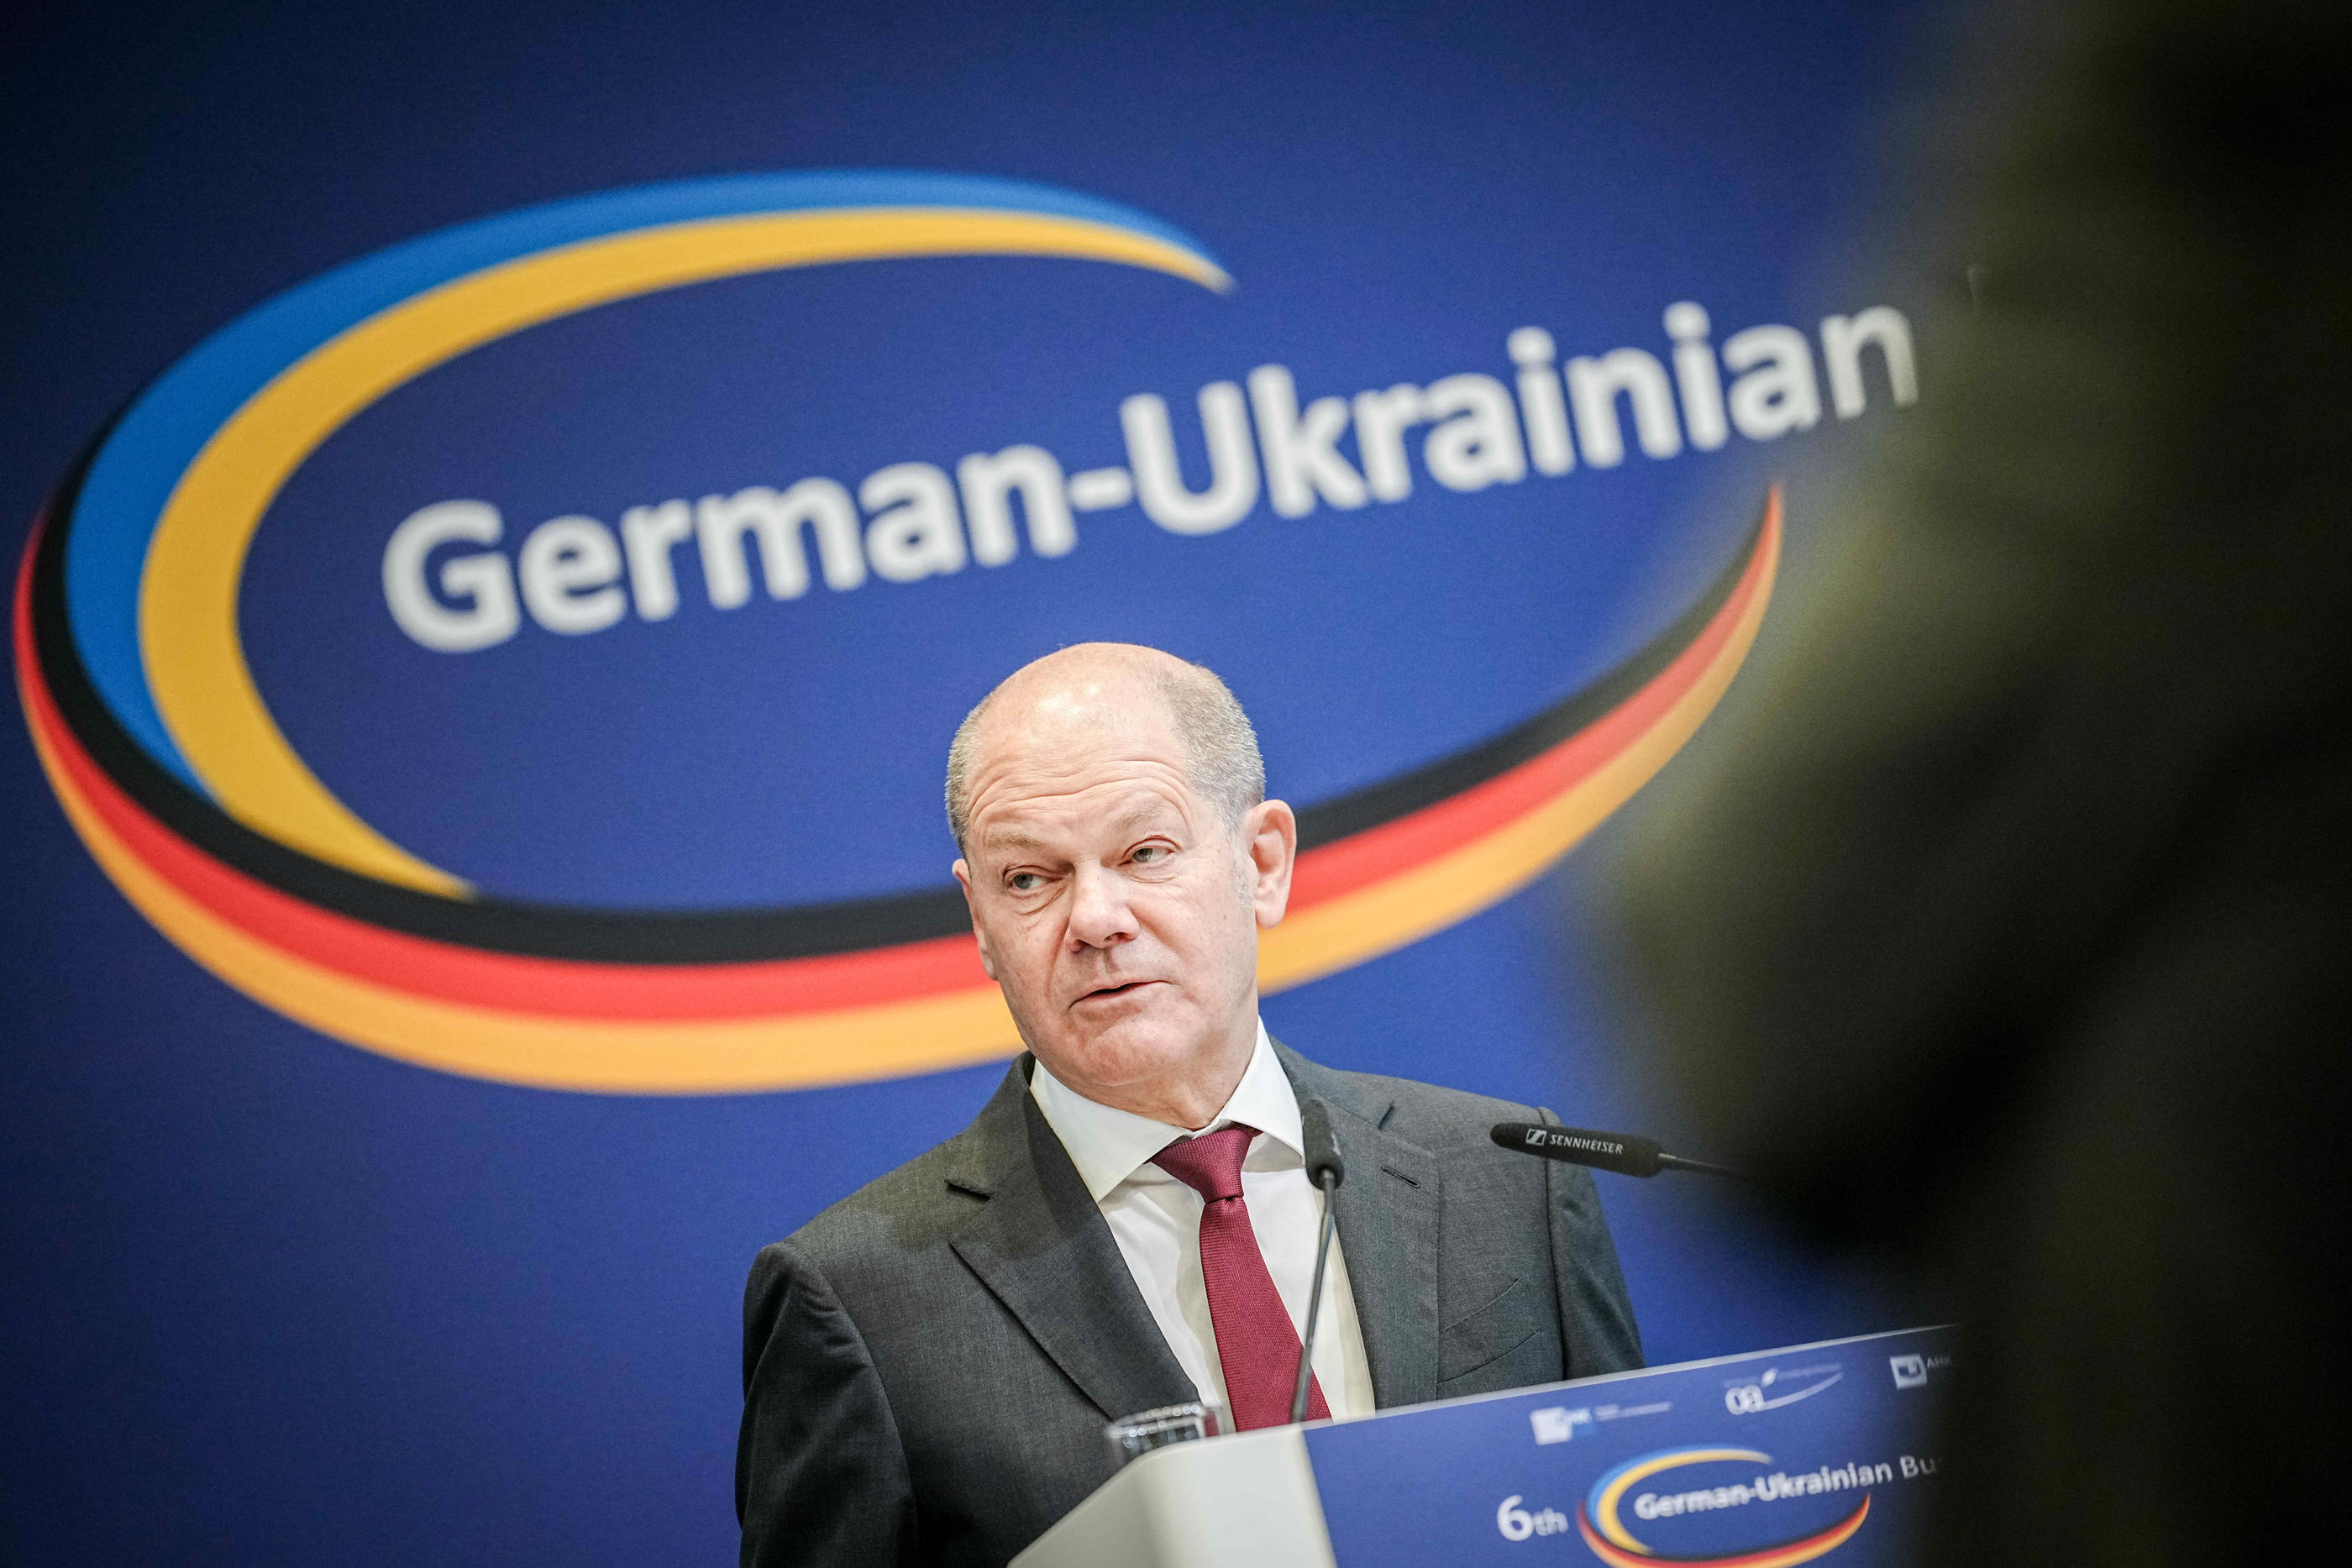 Olaf Scholz, le chancelier allemand a rappelé que le soutien à l'Ukraine était toujours entier malgré l'aide apportée à Israël. PictureAlliance / Icon Sport